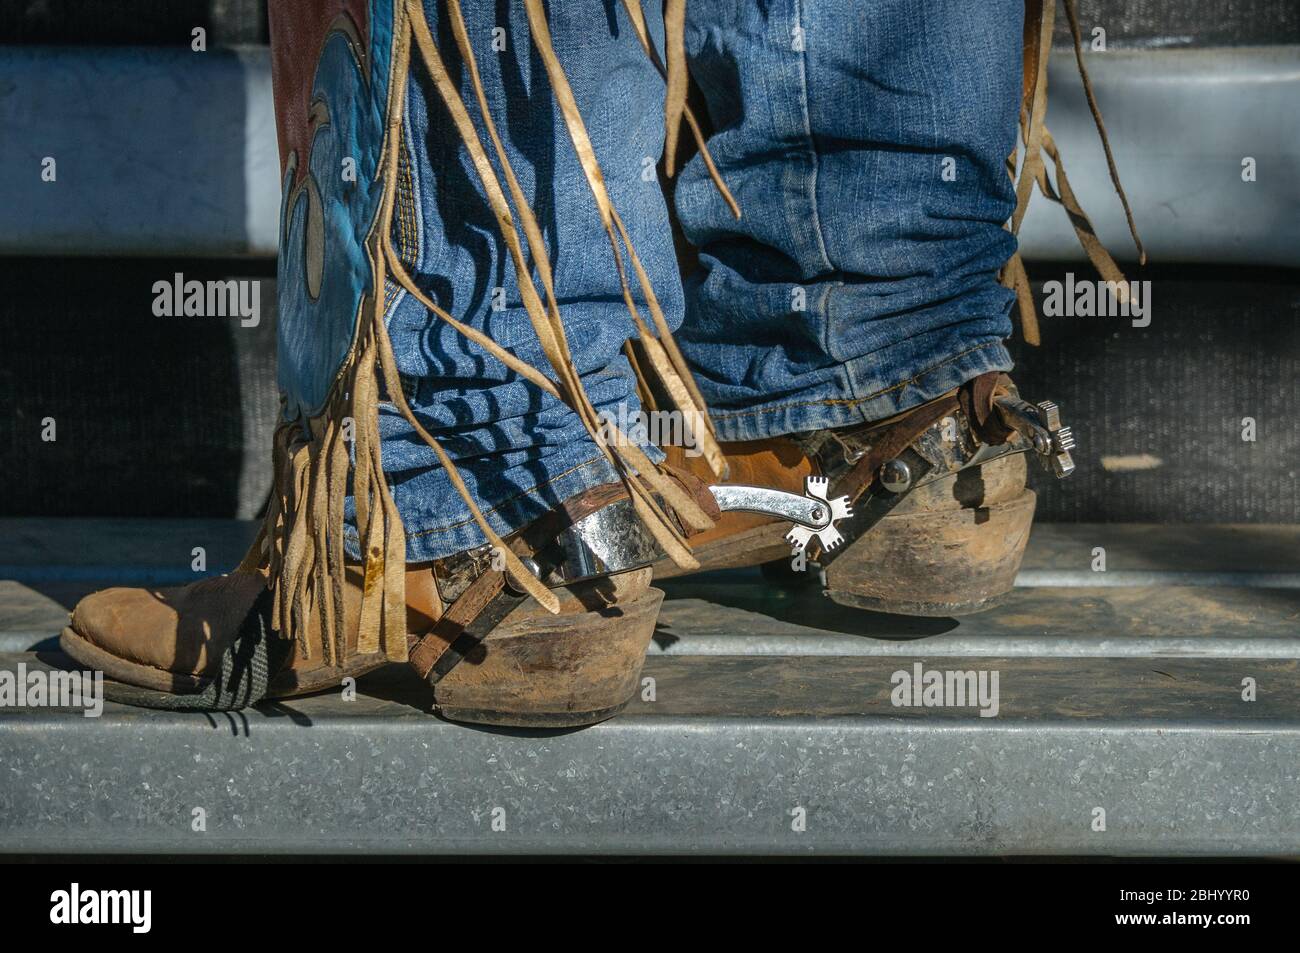 Gambe inferiori di rodeo con jeans, zaini, stivali e spurs in cima alla piattaforma su uno degli scivoli, pronti a prendere il suo giro a Mareba in Australia. Foto Stock